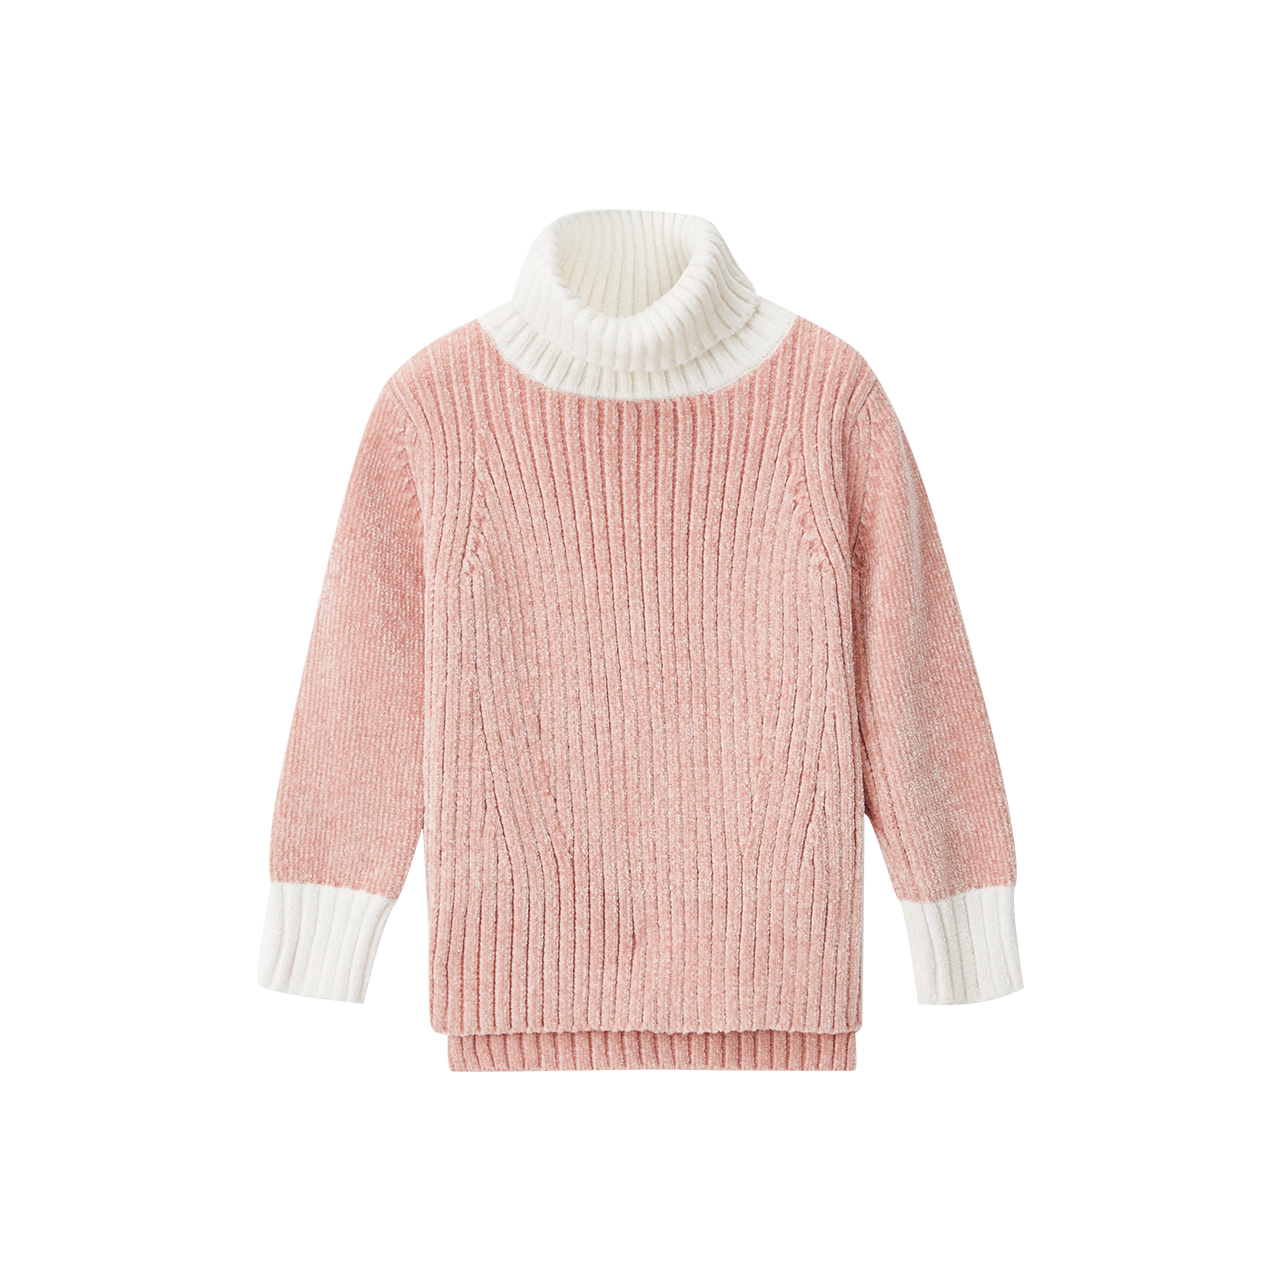 笛莎童装女童毛衣2020冬新款中大童儿童时尚纯色小女孩套头针织衫